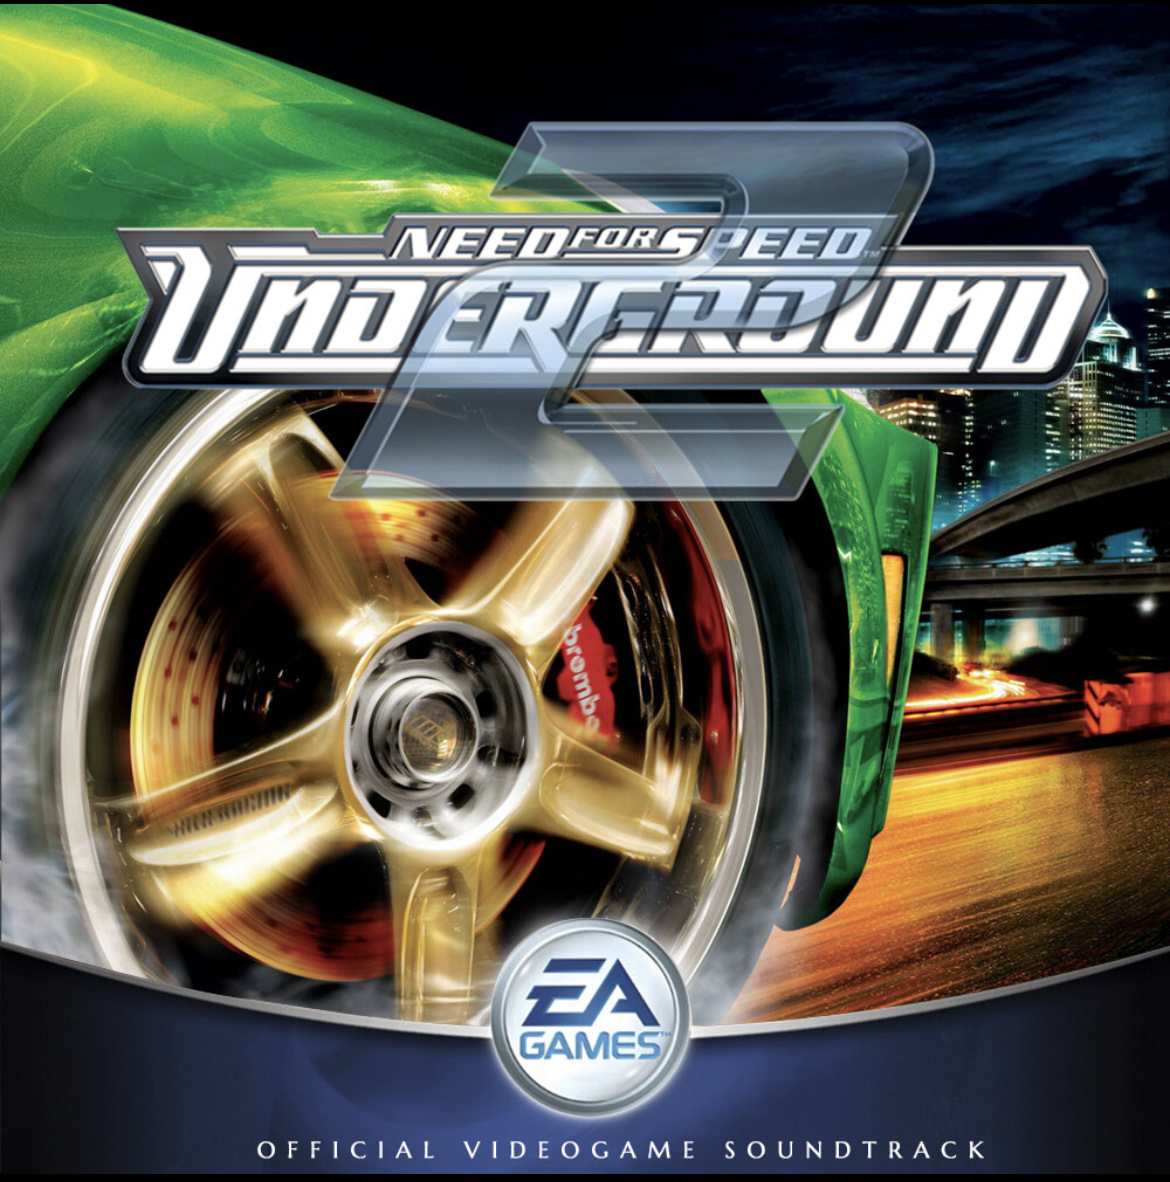 Песня из игры андеграунд. Need for Speed Underground 2003 обложка. Need for Speed Underground 1. Need for Speed Underground 1 диск. Нфс андеграунд 2.